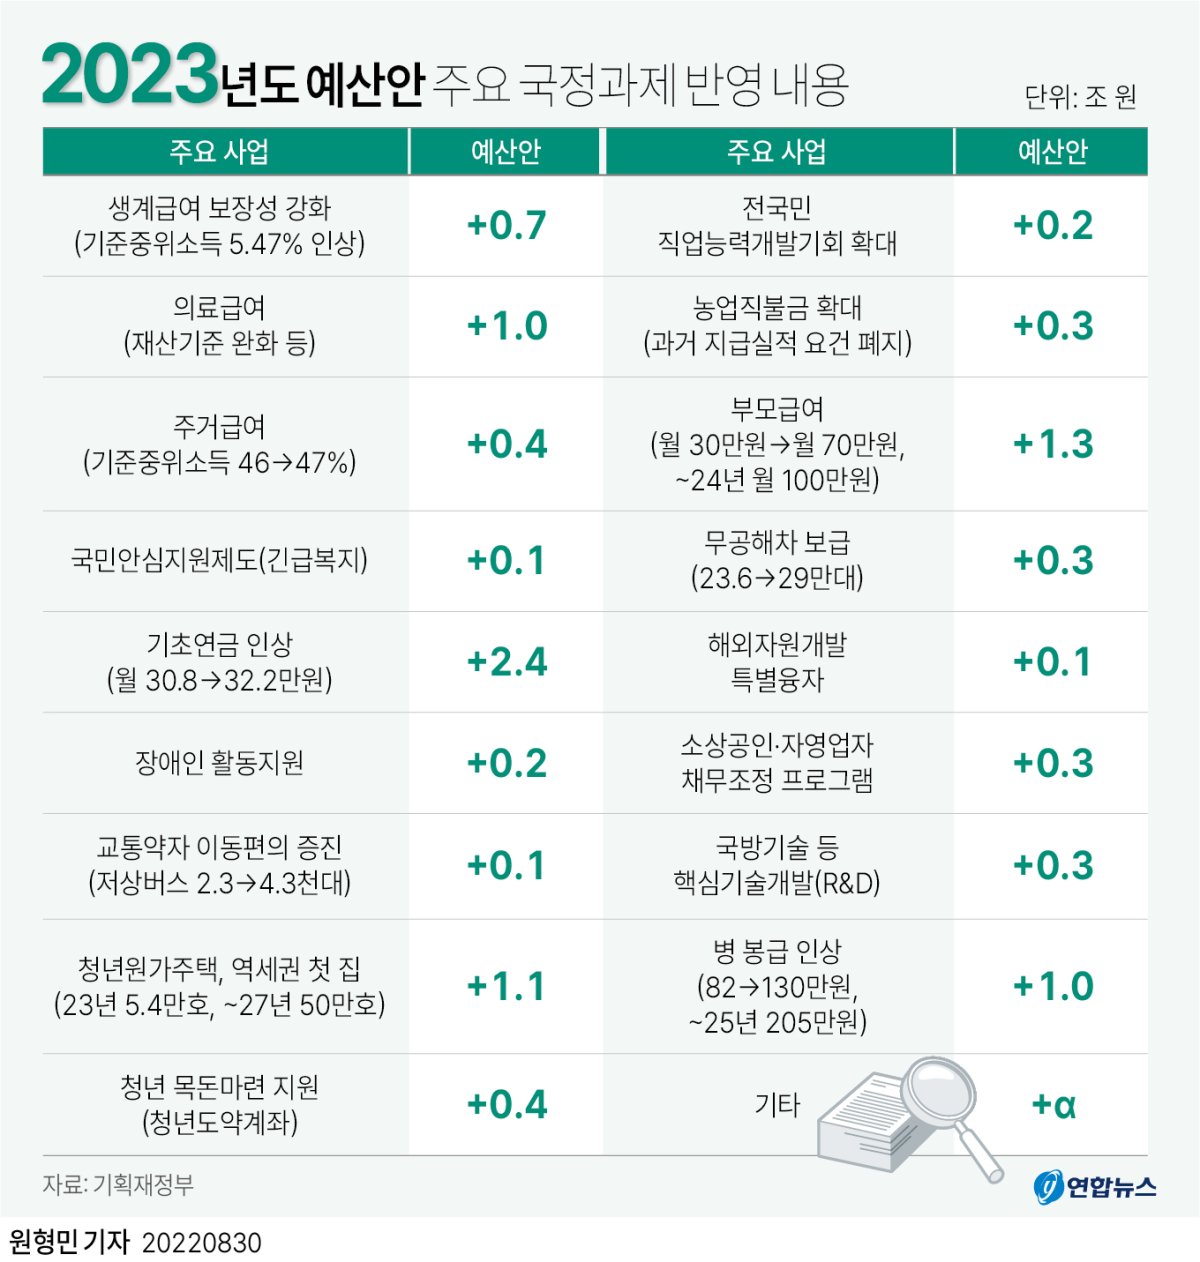 [그래픽] 2023년도 예산안 주요 국정과제 반영 내용